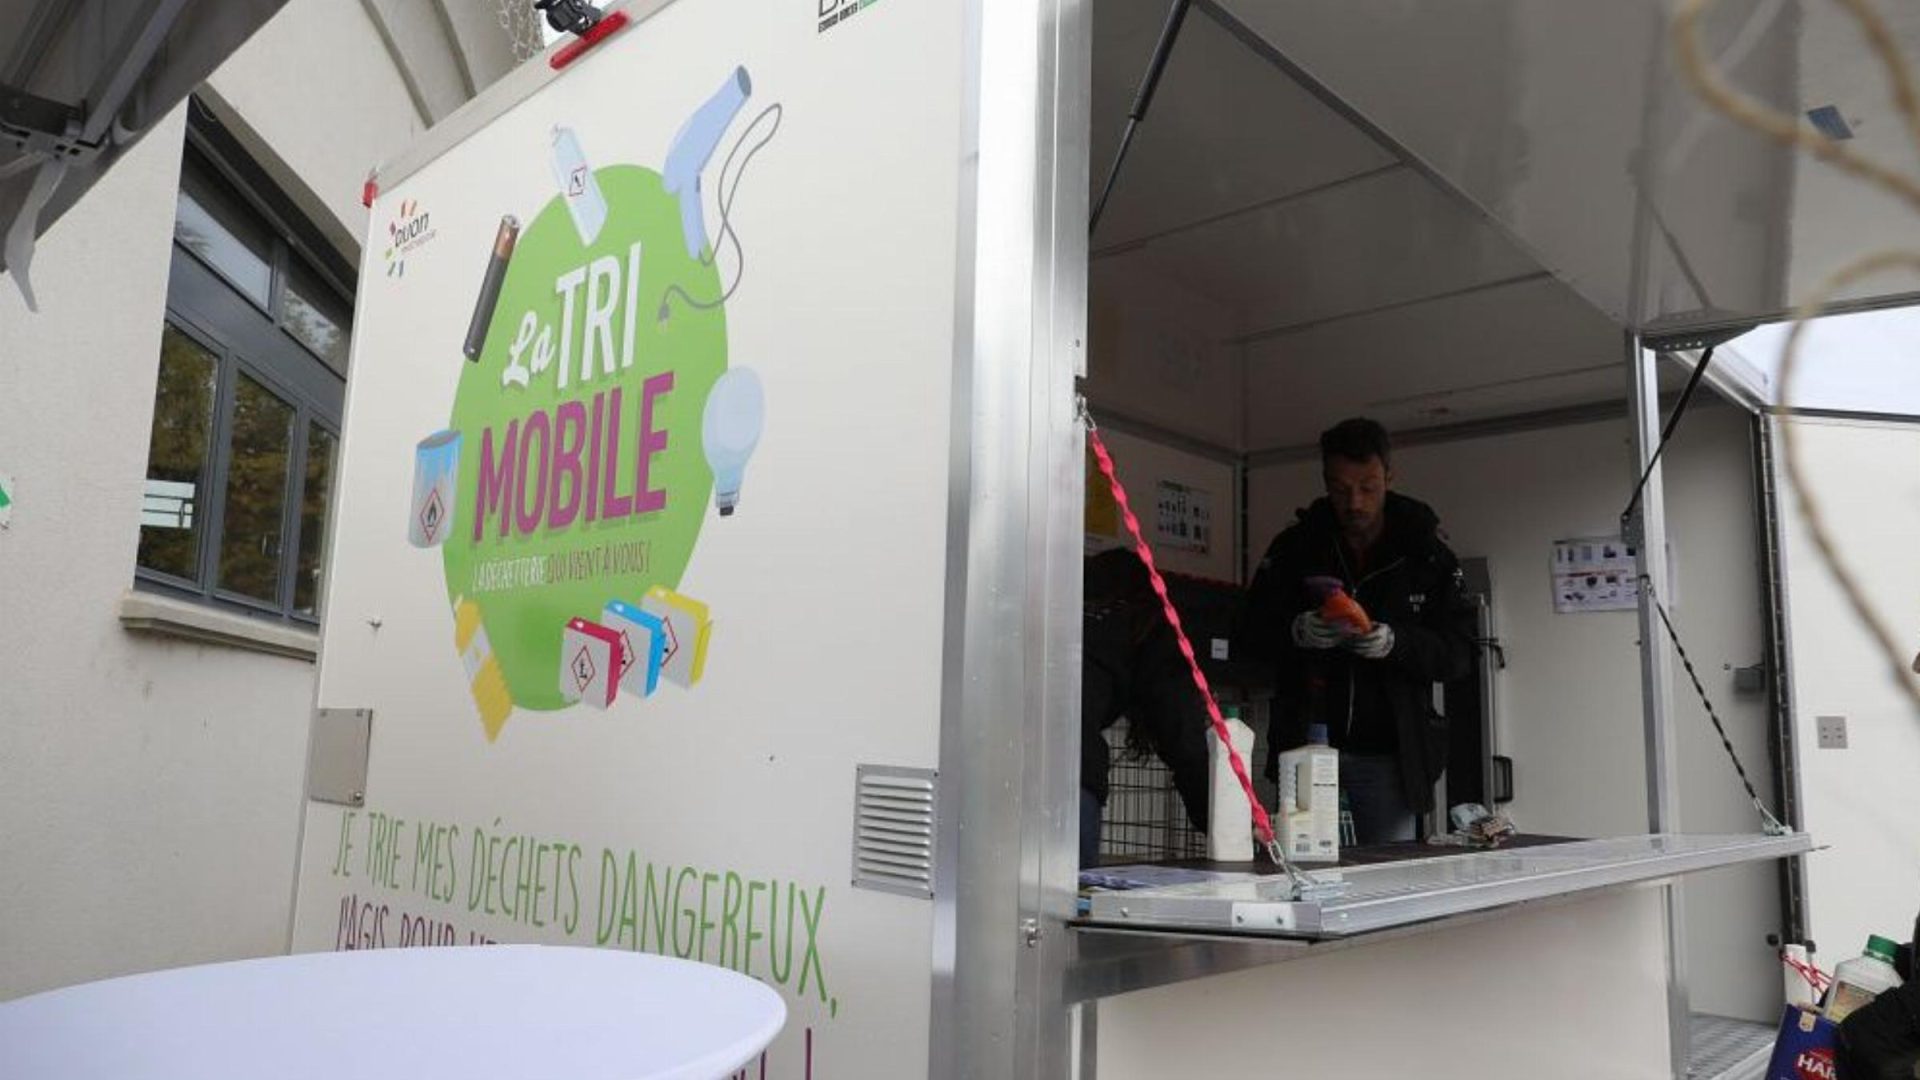 La Tri mobile : la solution pour vous déchets dangereux en ville.